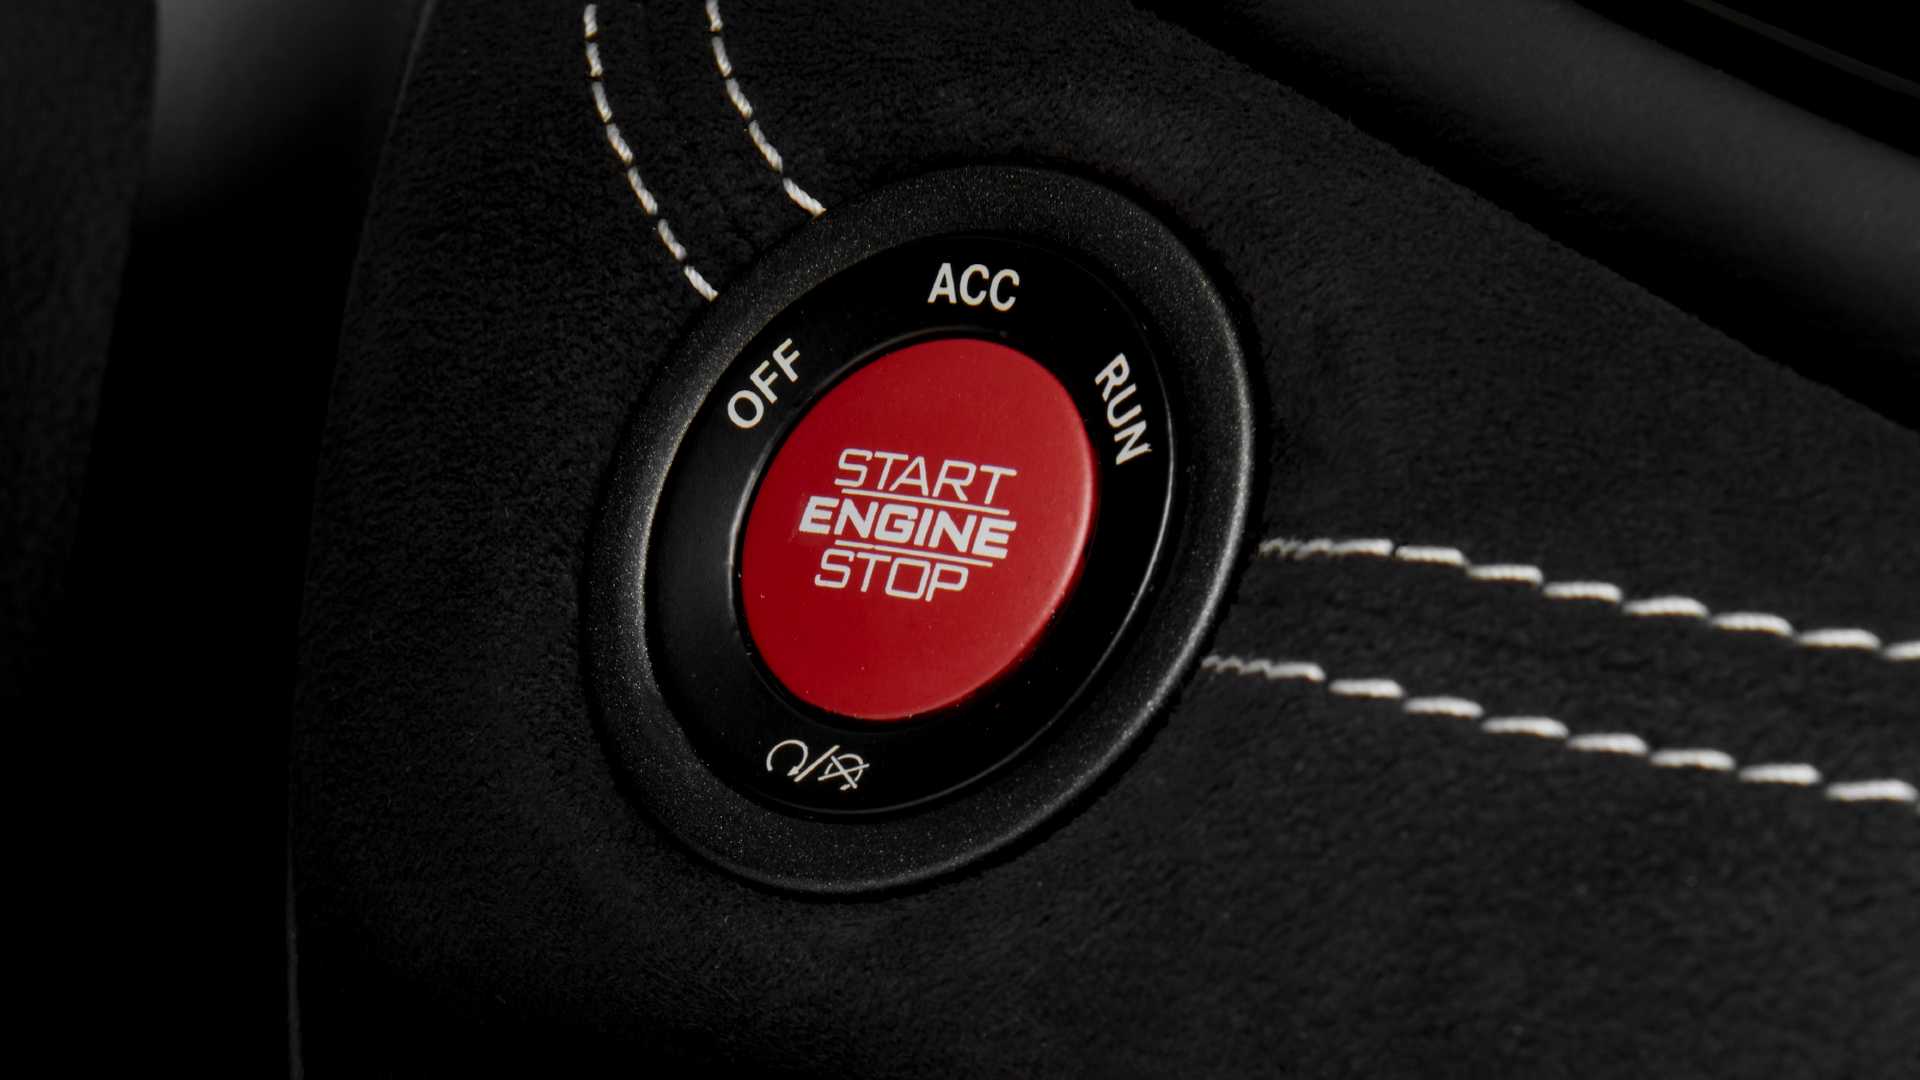 دودج تكشف عن دورانجو SRT هيلكات 2021 كأقوى SUV في العالم 74